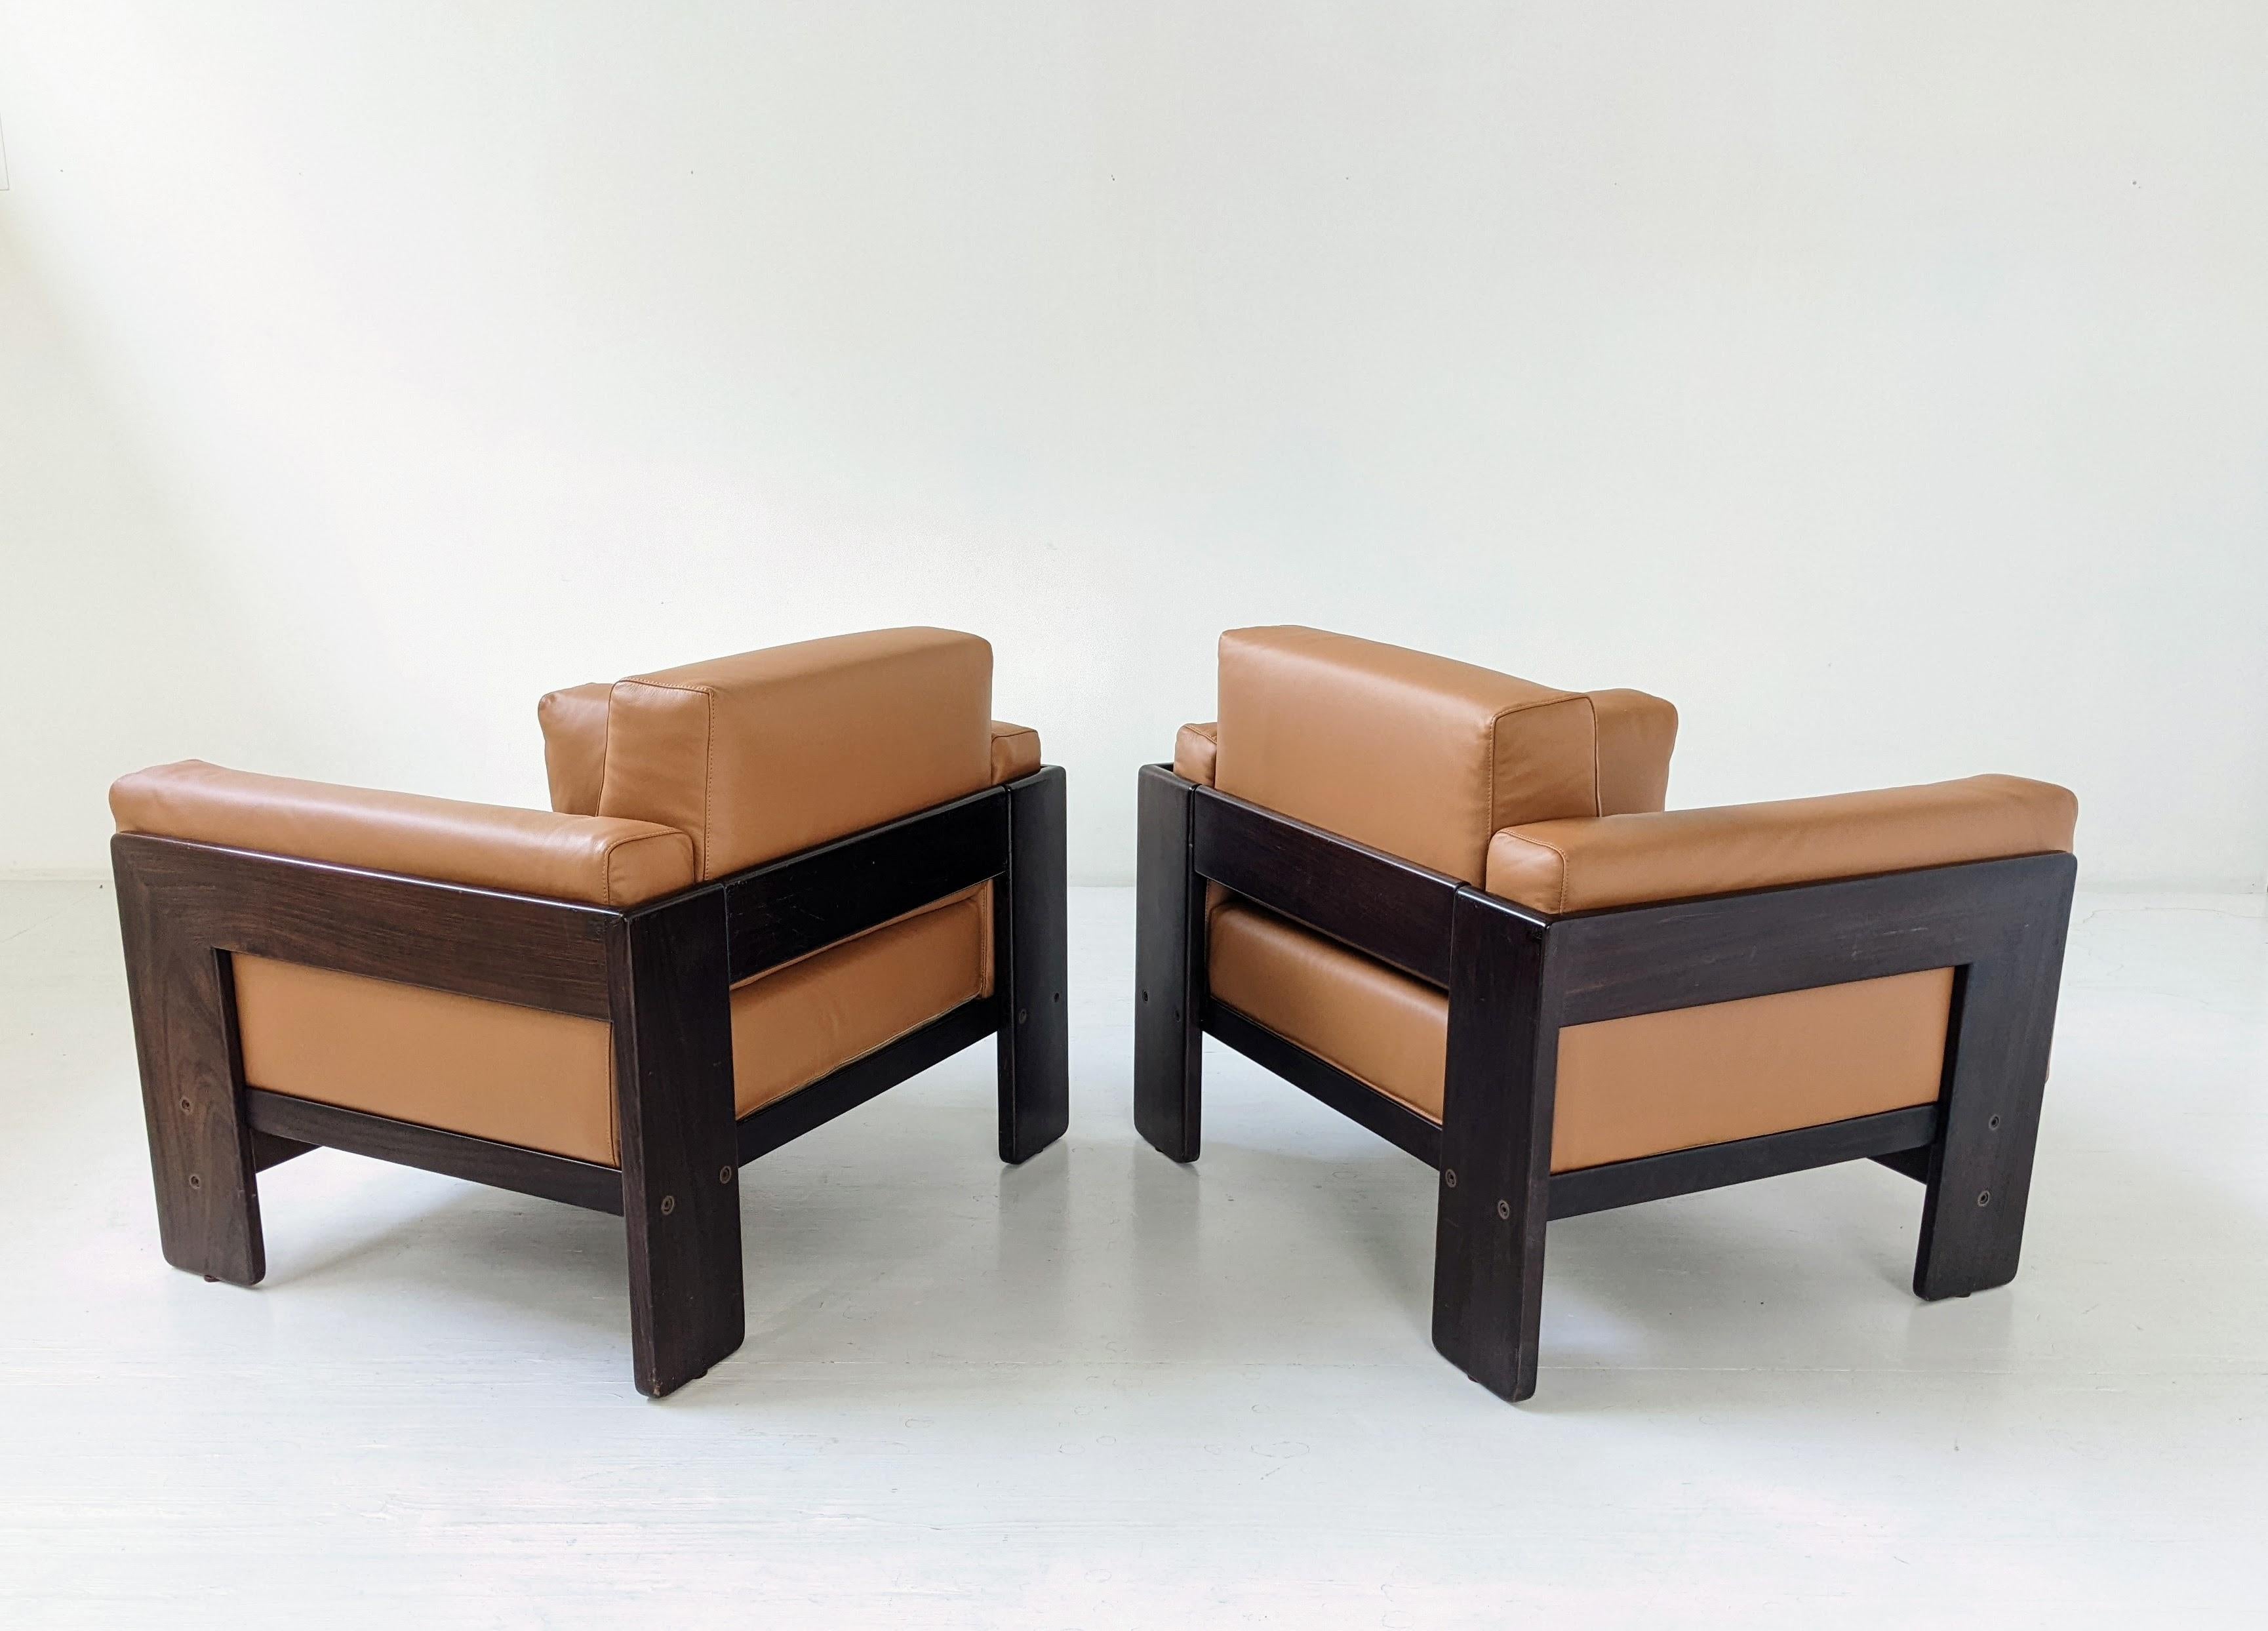 Paire de fauteuils Bastiano réalisé avec une structure en bois et des coussins en cuir brun cognac. Tobia Scarpa a conçu la série Bastiano pour la maison d’édition Gavina en 1960. Très confortable, les coussins sont très épais et sont maintenus par